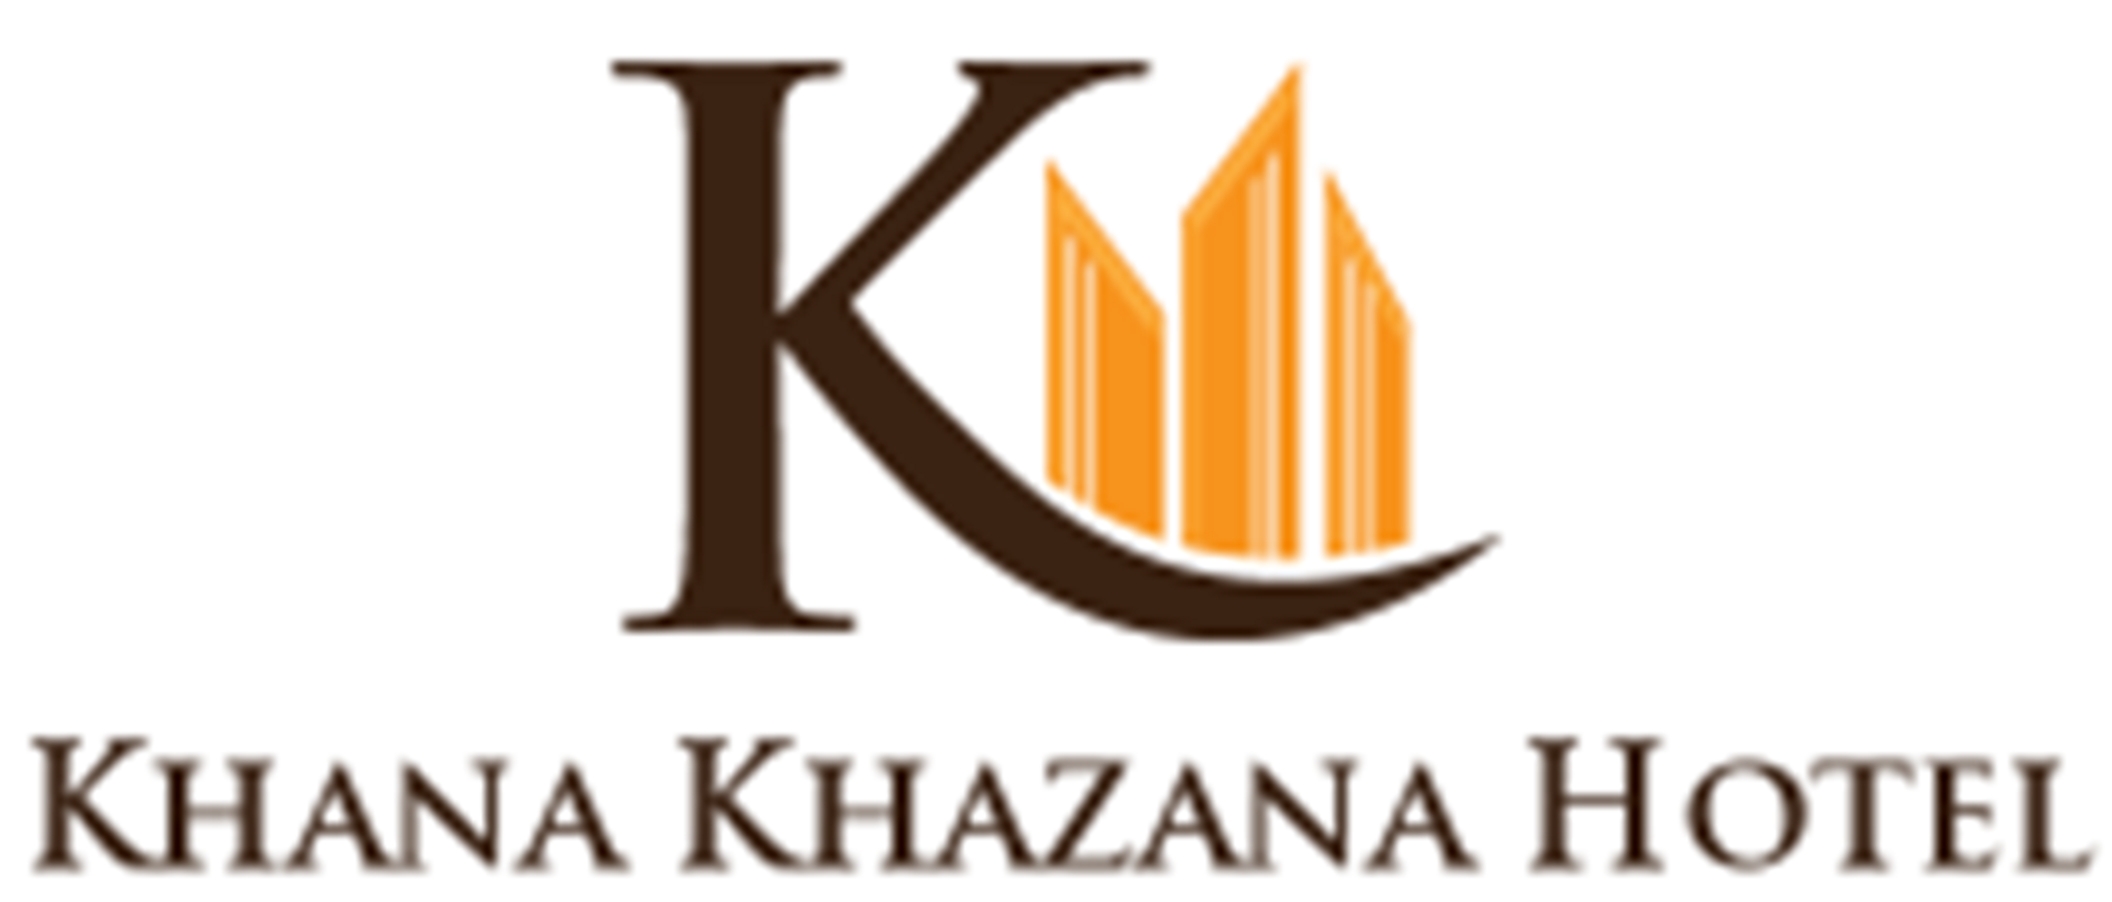 Khana Khazana Hotel